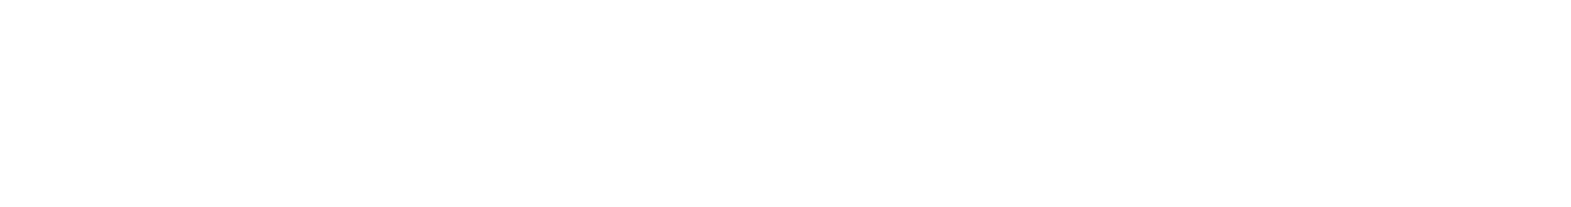 Symfony Starter logo